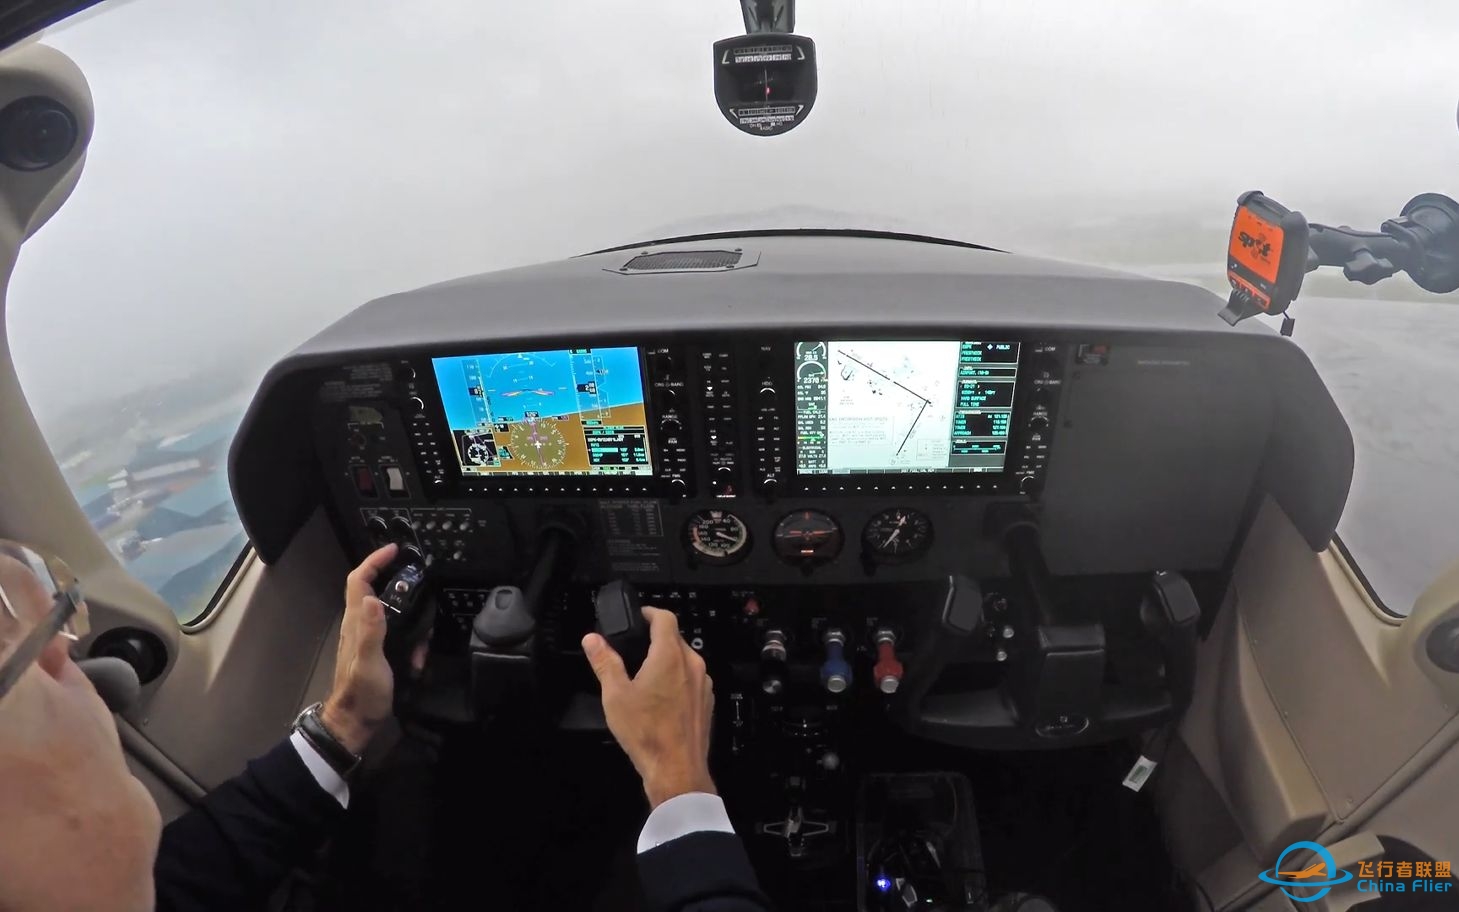 【第一视角飞行】塞斯纳Cessna 182T - 恶劣天气下起降飞行-1750 